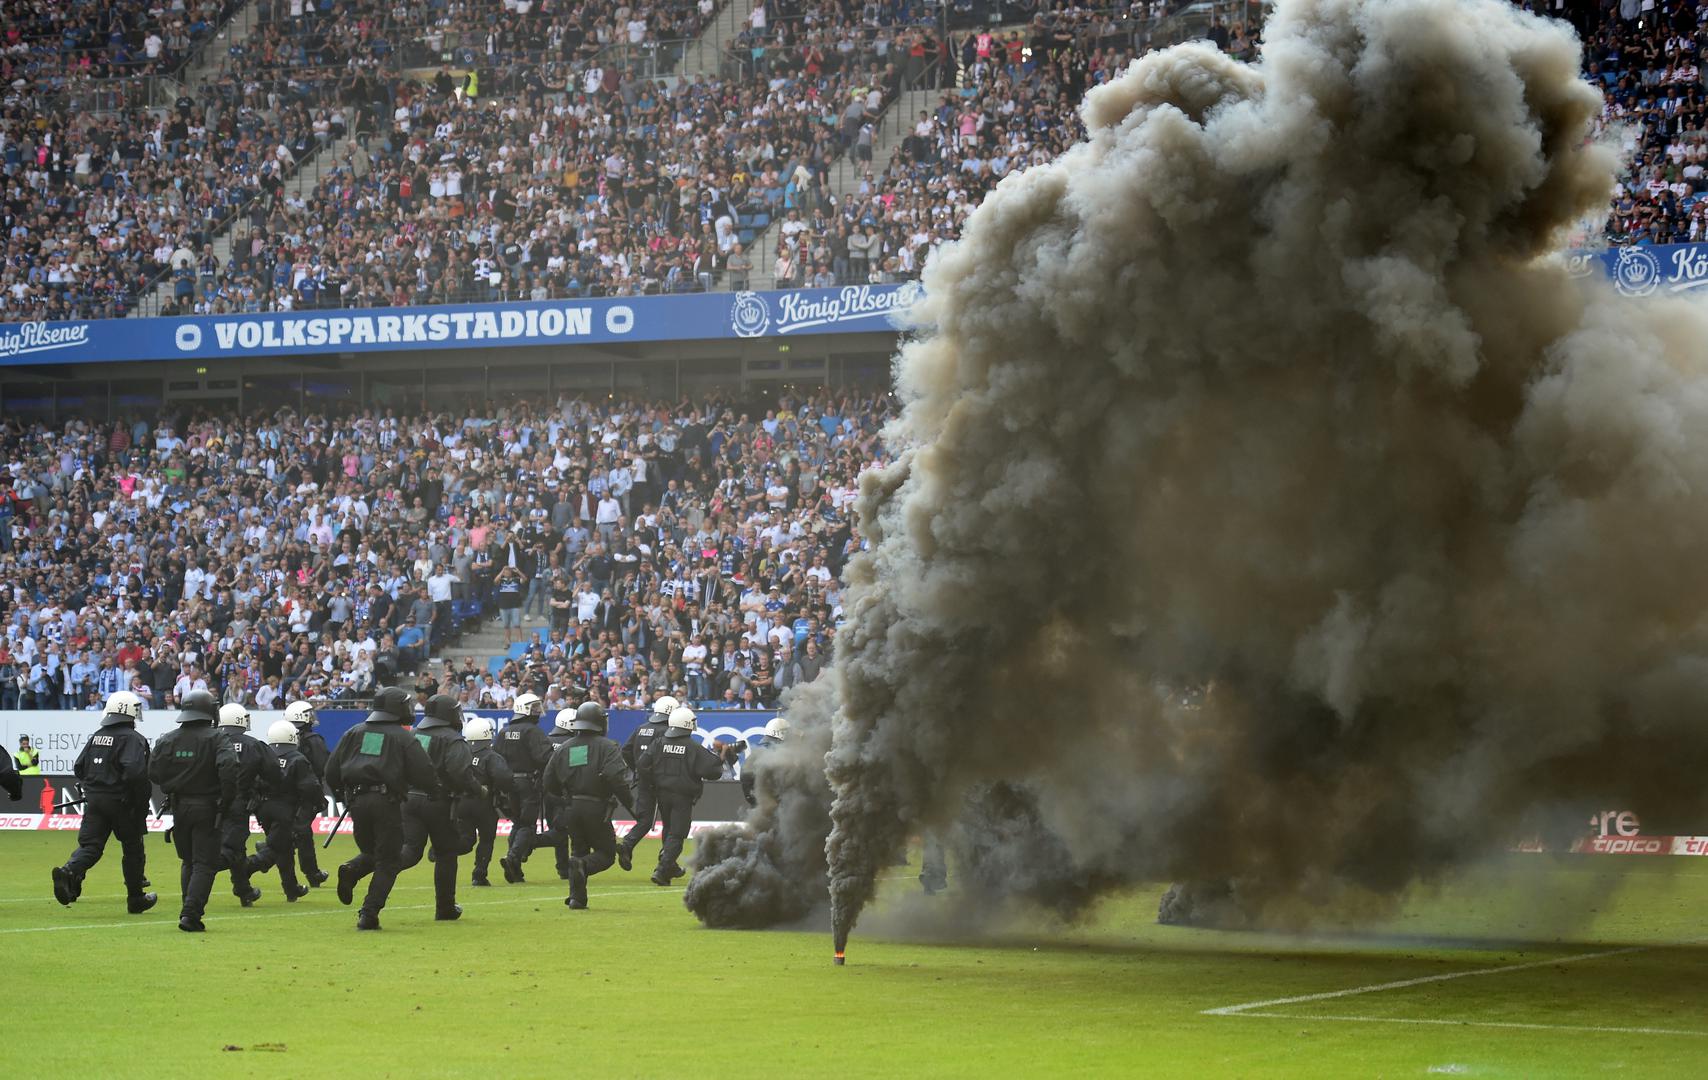 Naime, navijači se nisu mogli pomiriti s ispadanjem te su na teren počeli bacati baklje i dimne bombe.